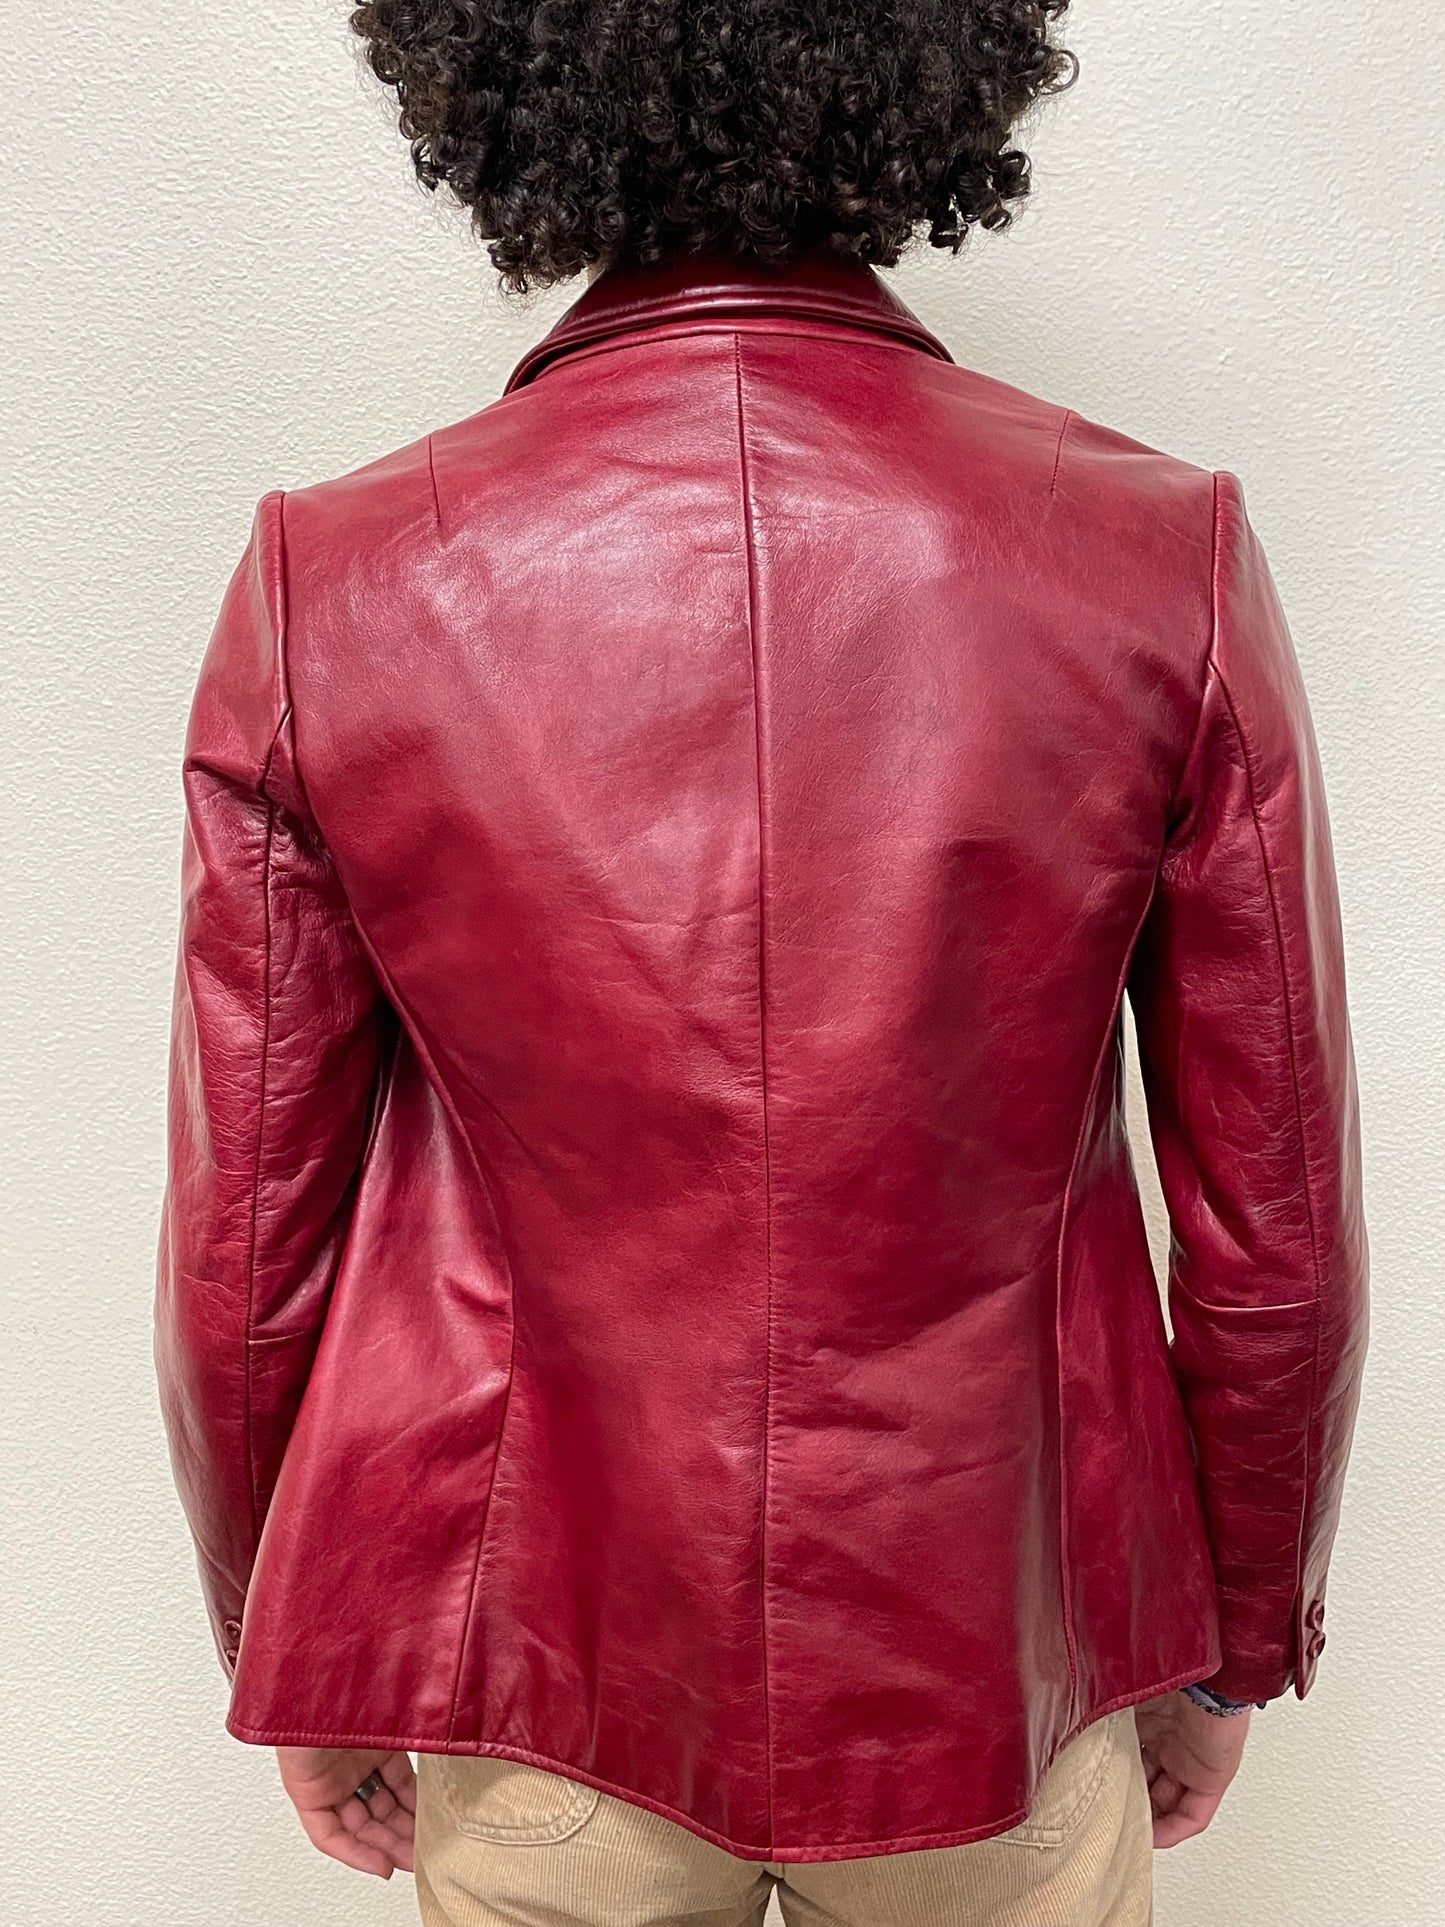 Gap Leather Jacket